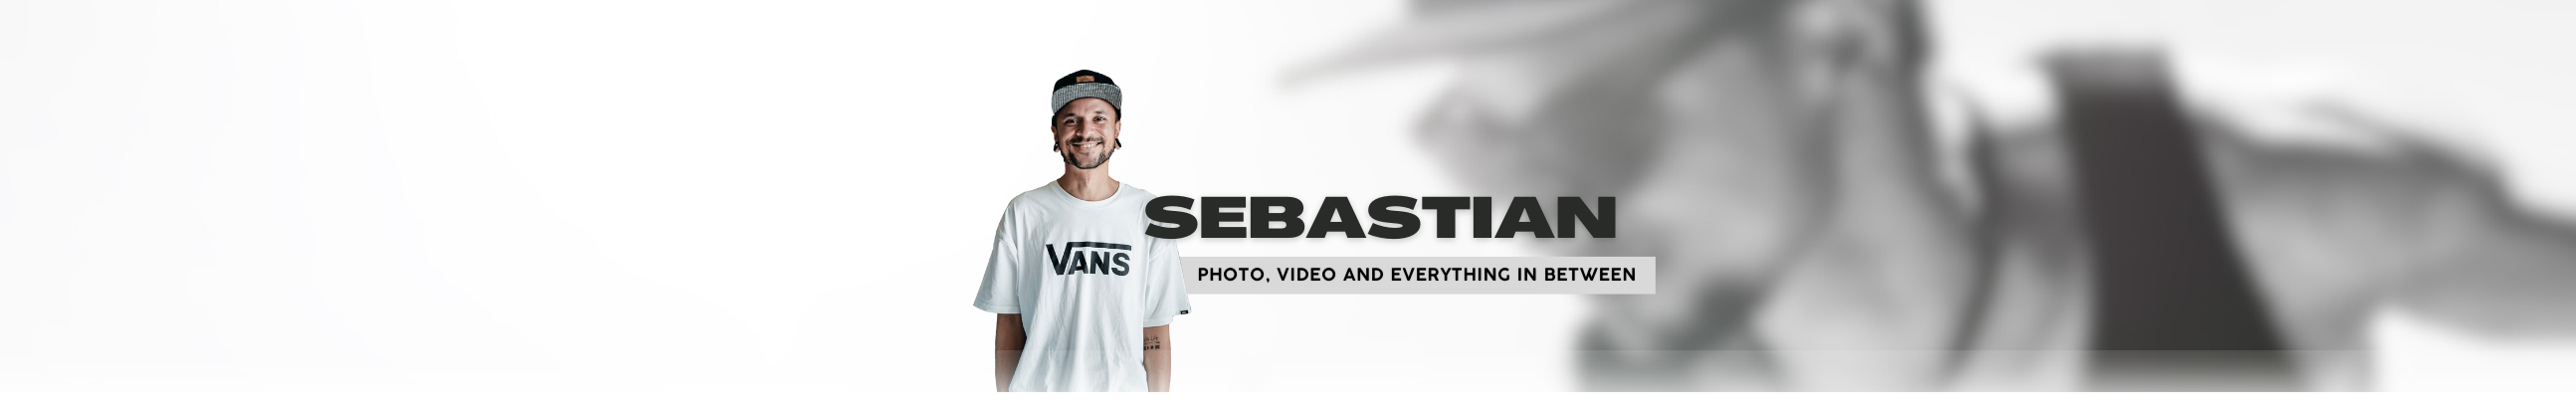 Sebastian Mann's profile banner